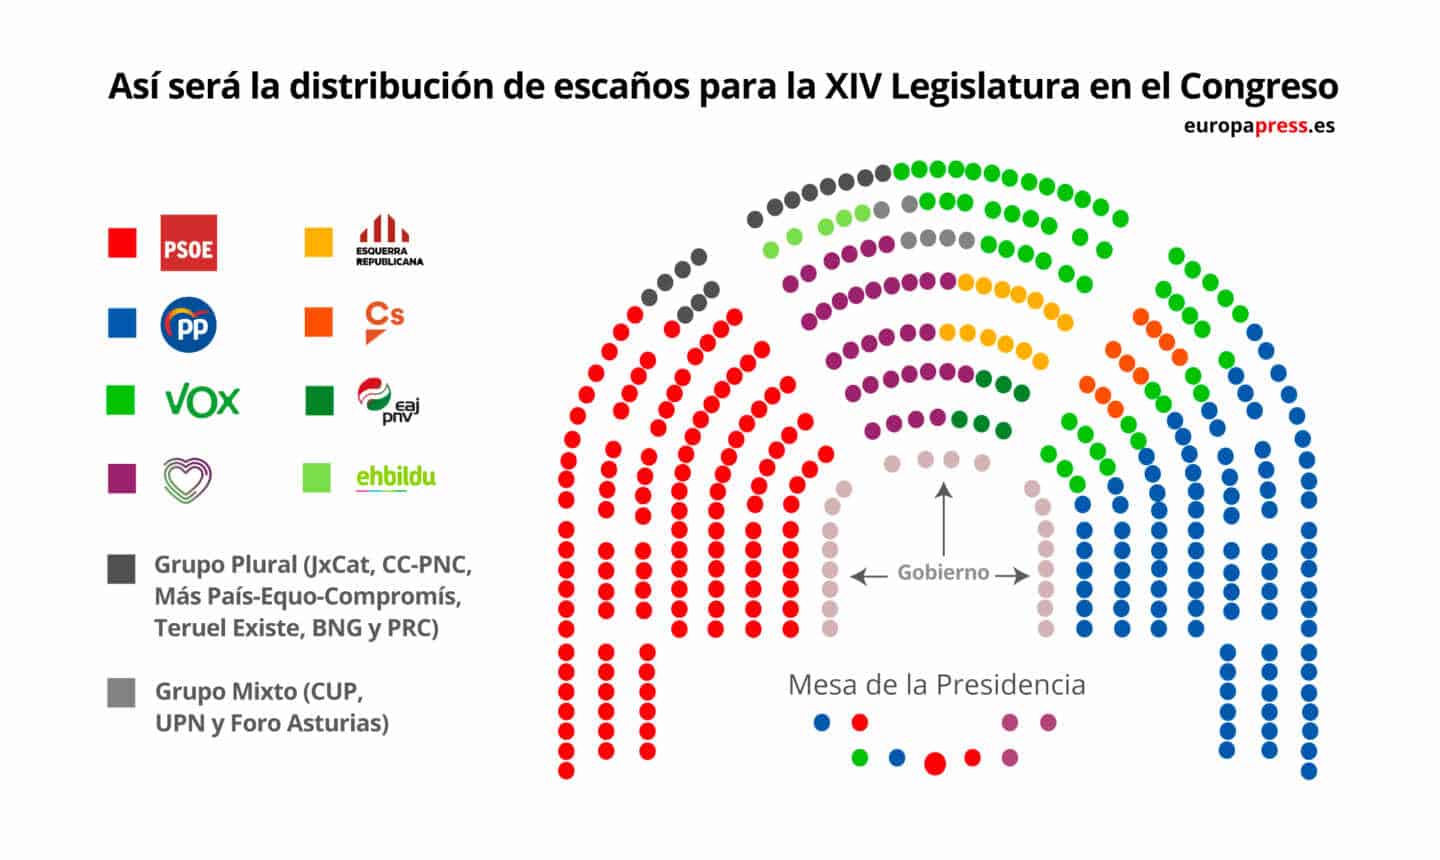 Distribución de escaños en el Congreso para la XIV Legislatura.